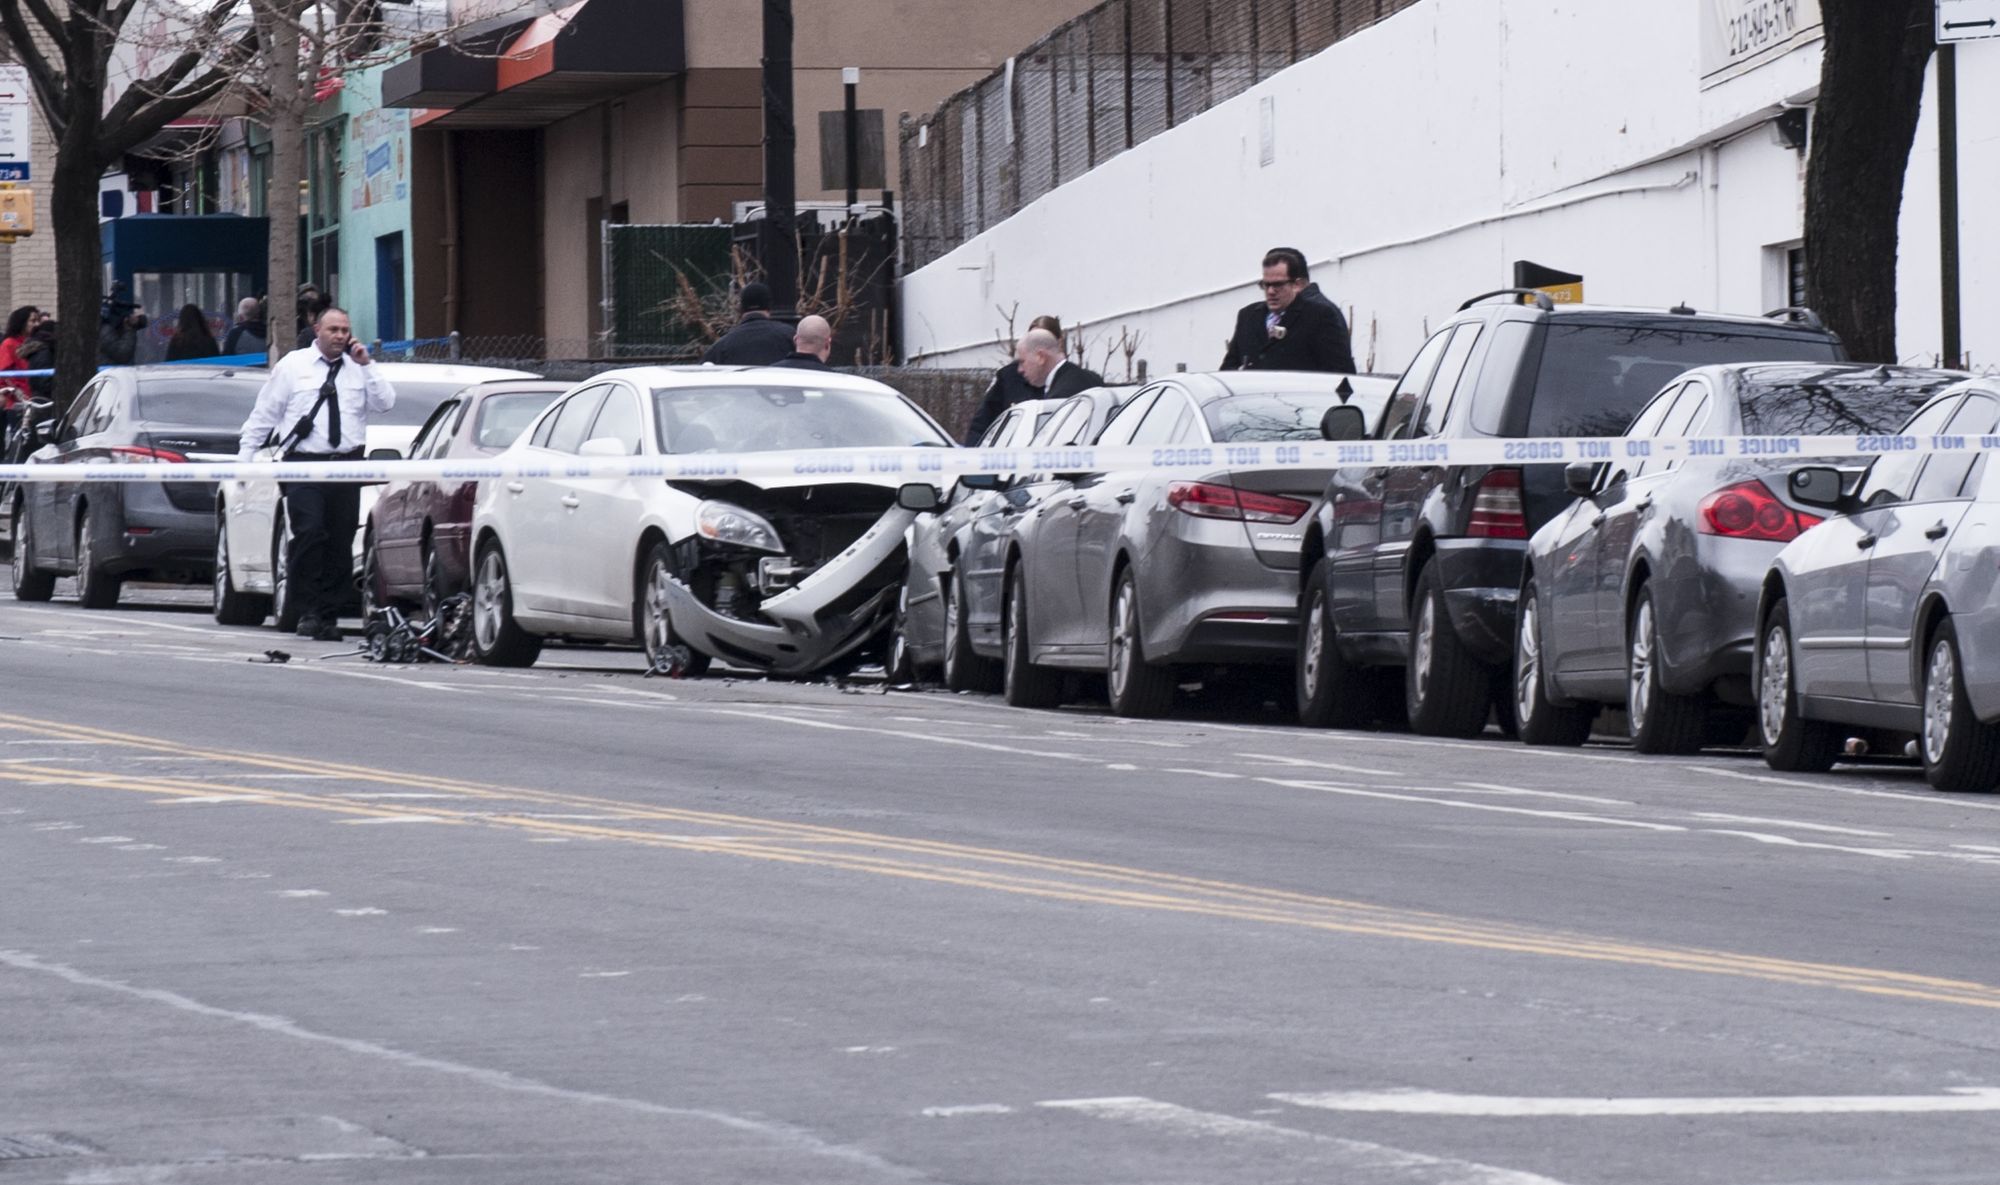 Local Pols Propose Legislation for Safer Streets Following Deadly Park Slope Crash